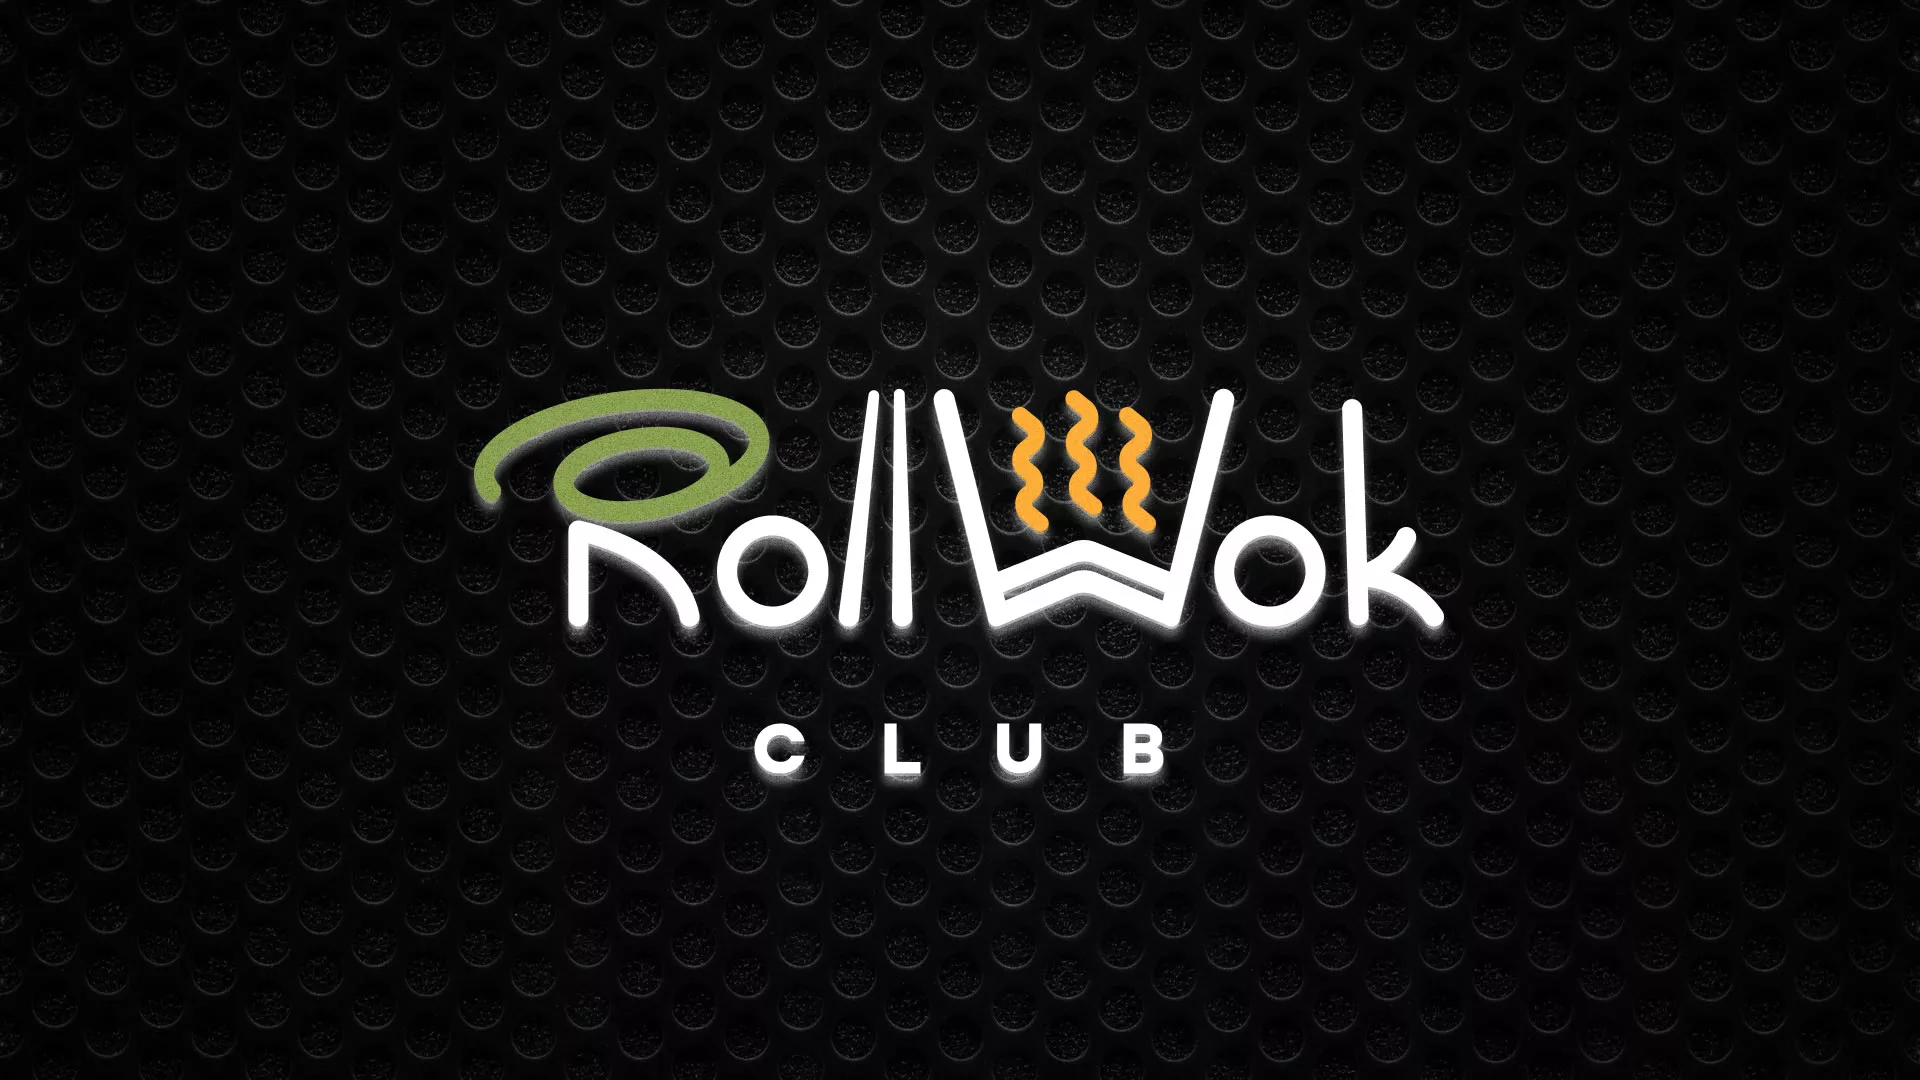 Брендирование торговых точек суши-бара «Roll Wok Club» в Москве